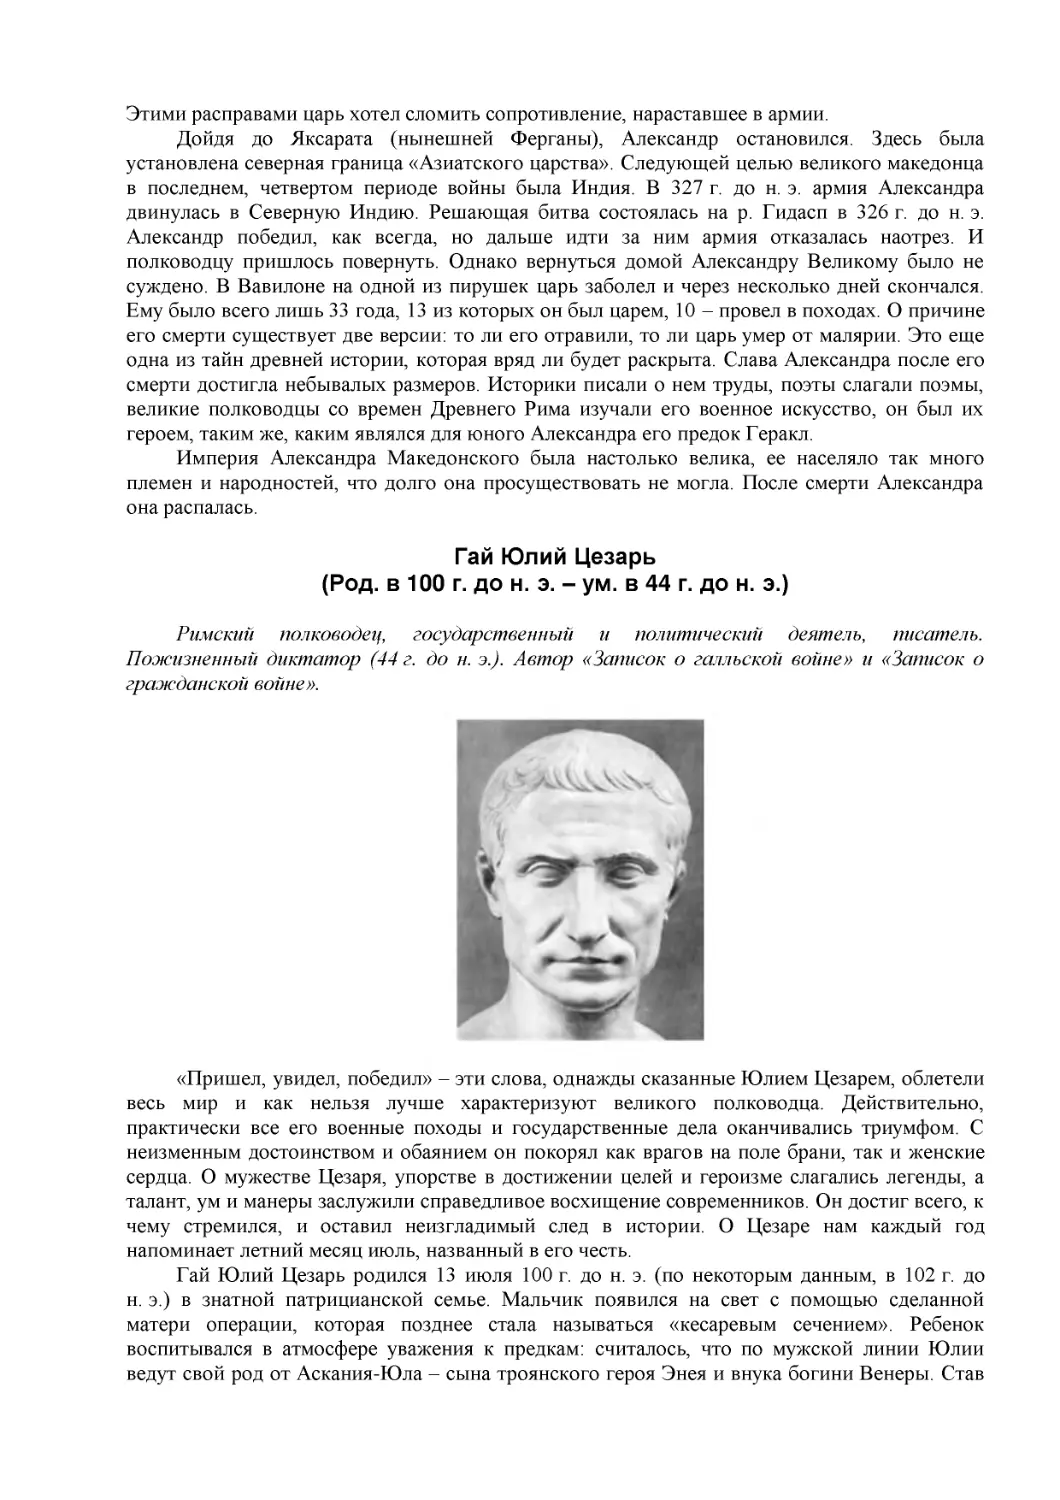 Гай Юлий Цезарь
(Род. в 100 г. до н. э. – ум. в 44 г. до н. э.)